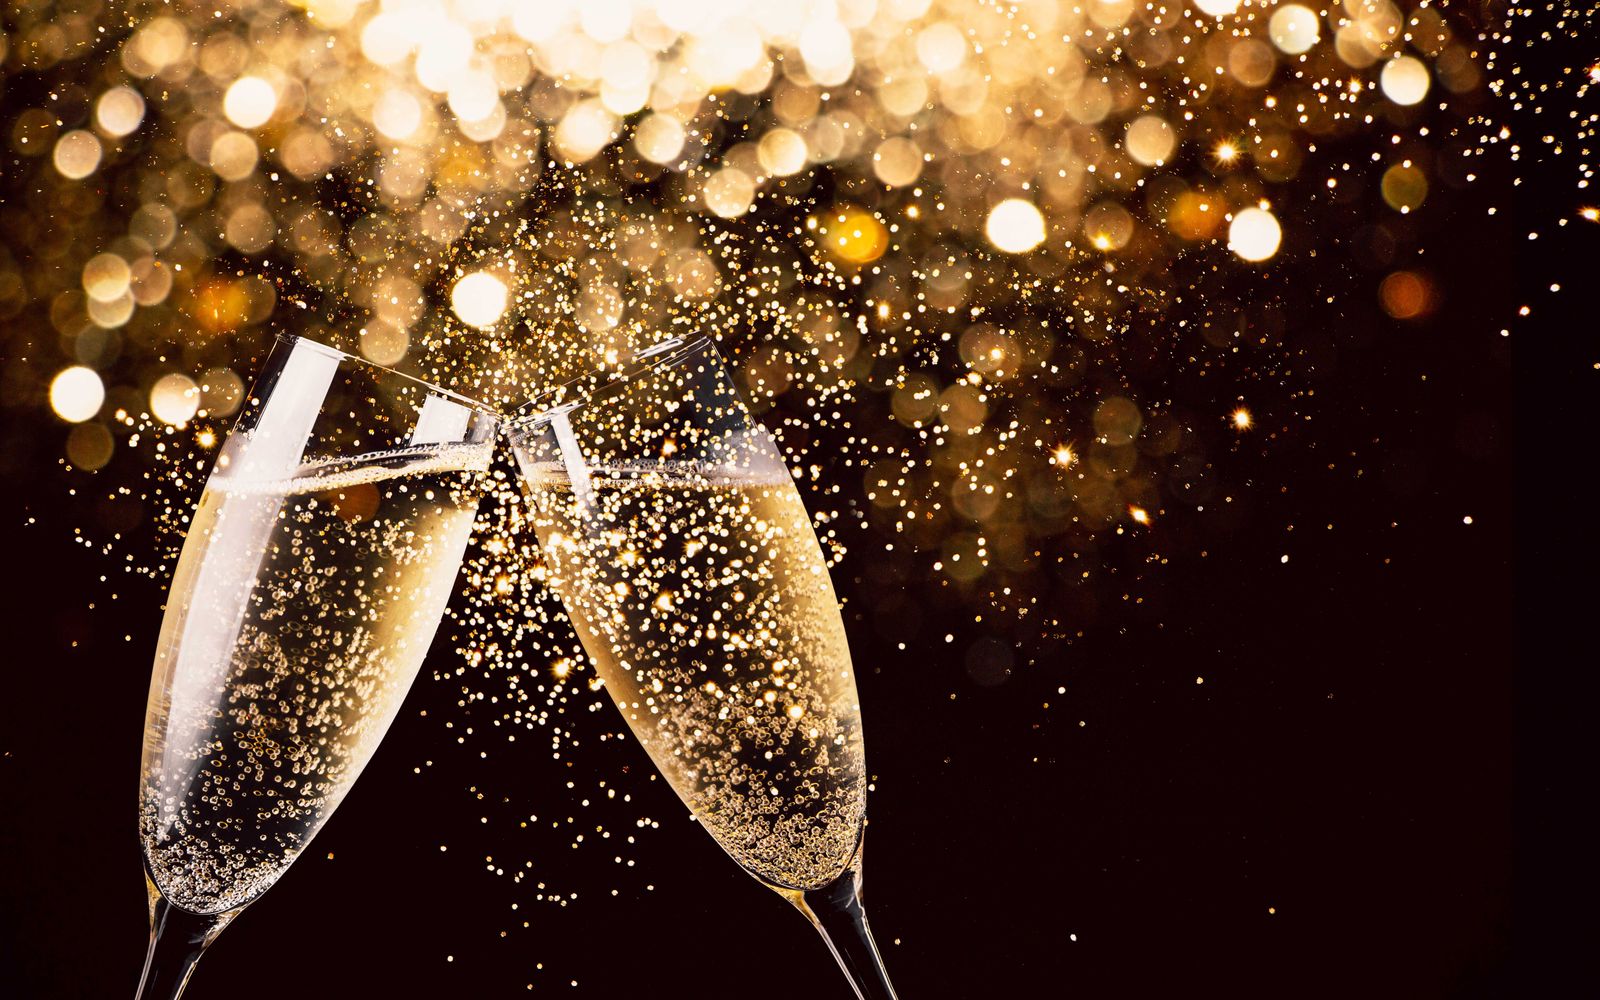 feest-bubbels-glazen-champagne-cava-nieuwjaar-receptie-c-gettyimages-1178741587_0.jpg